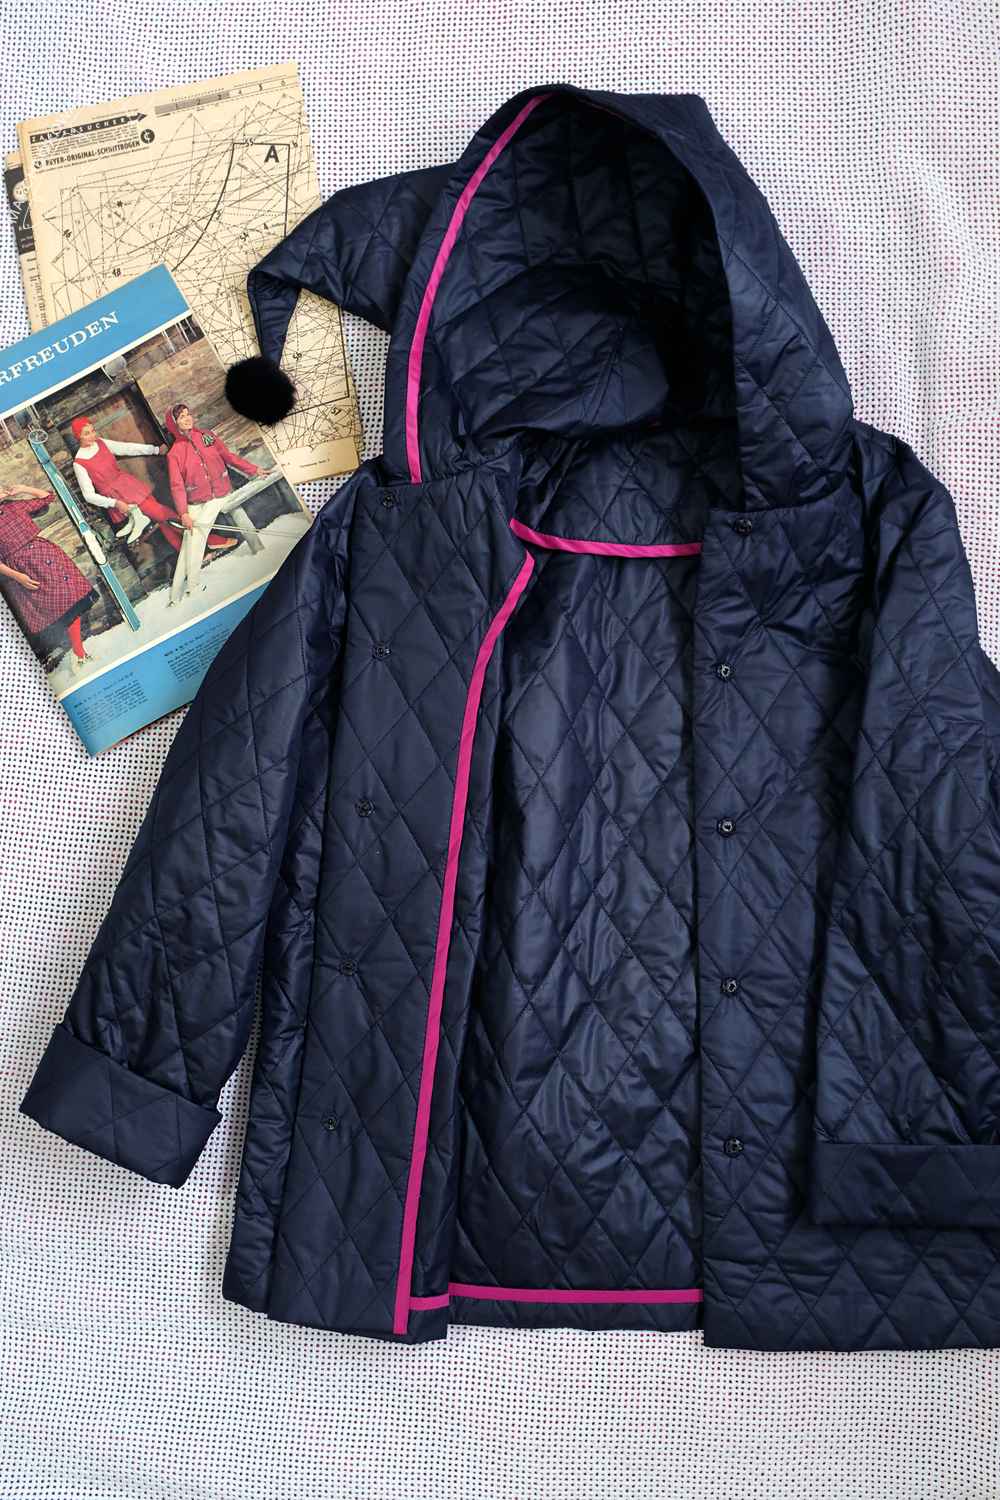 marchewkowa, szycie, Wrocław, retro, stare wykroje, kurtka, pikówka, Beyer Mode 1/1959, winter jacket, vintage sewing pattern, quilted fabric